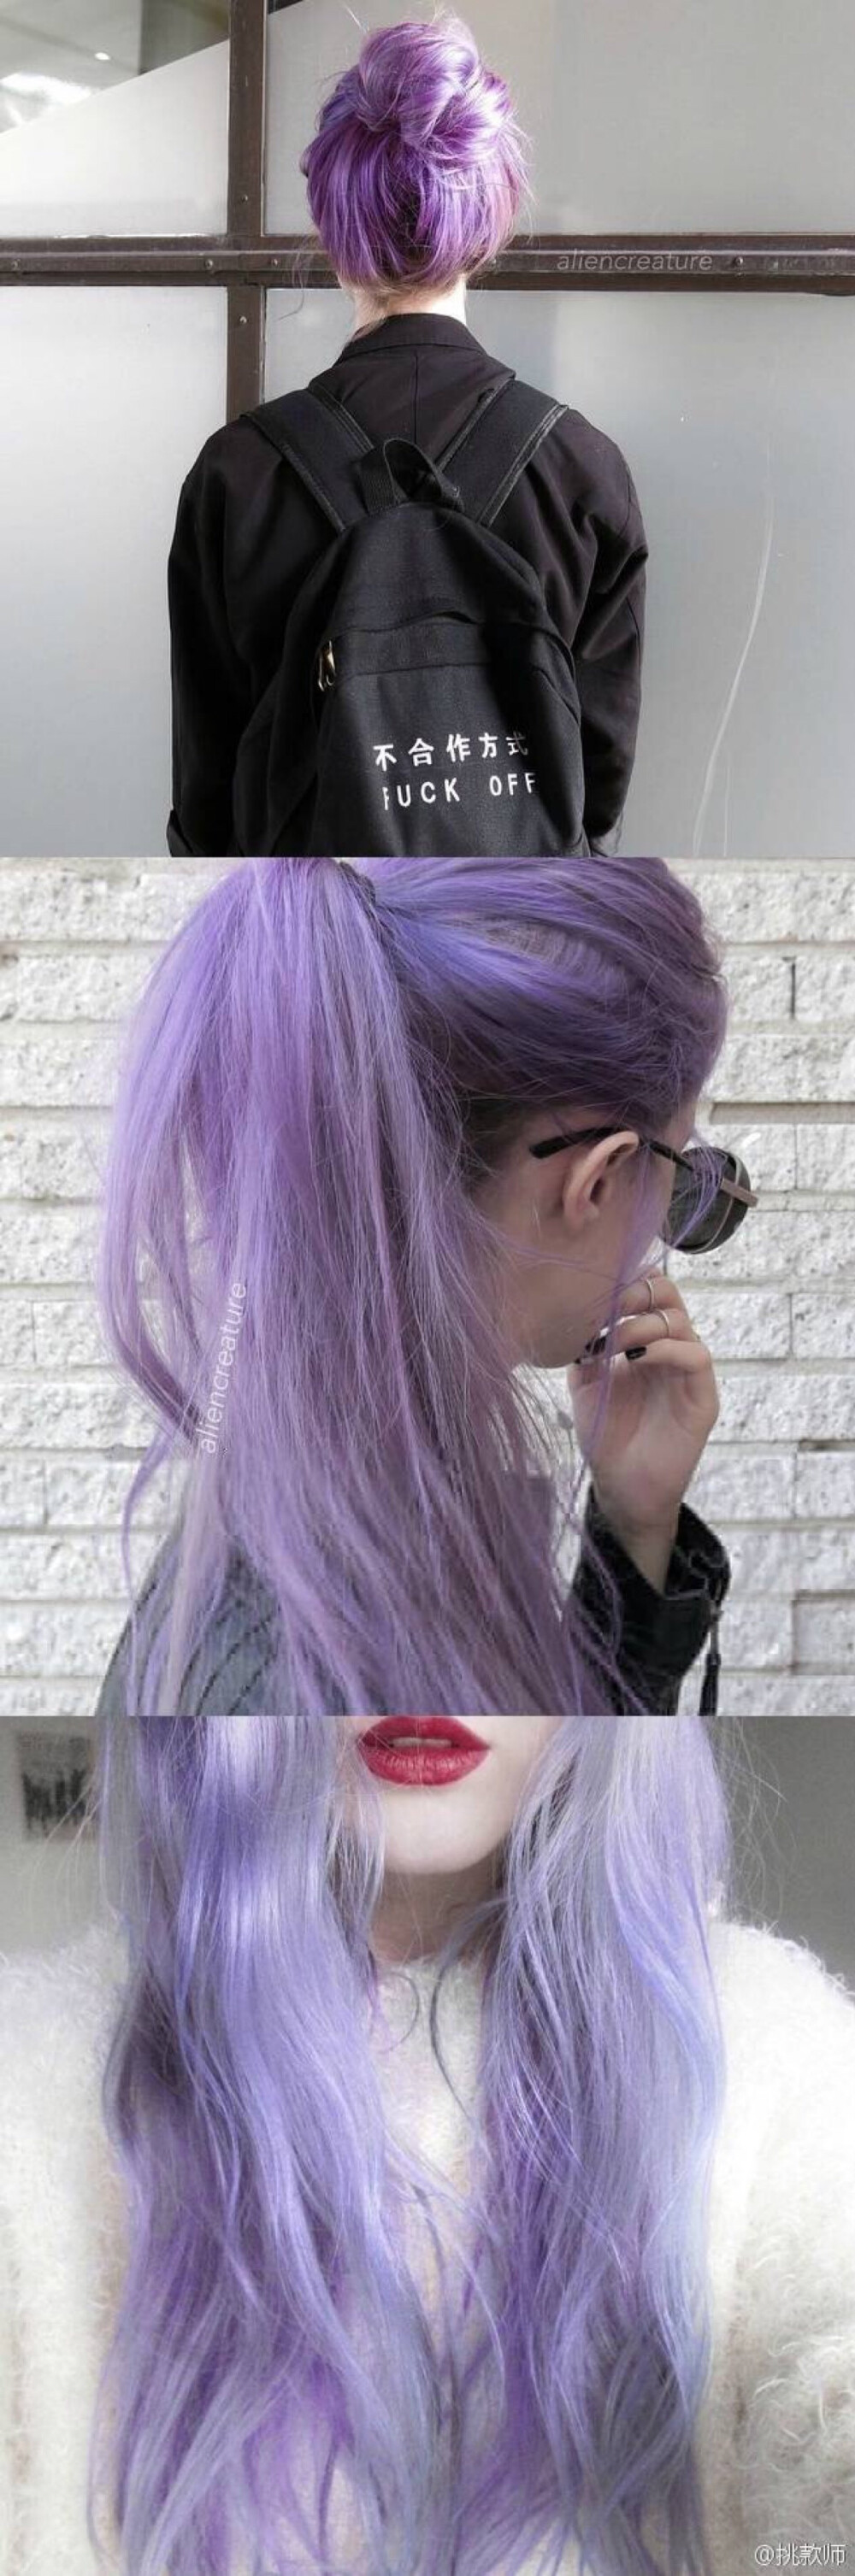 超美的紫色头发9